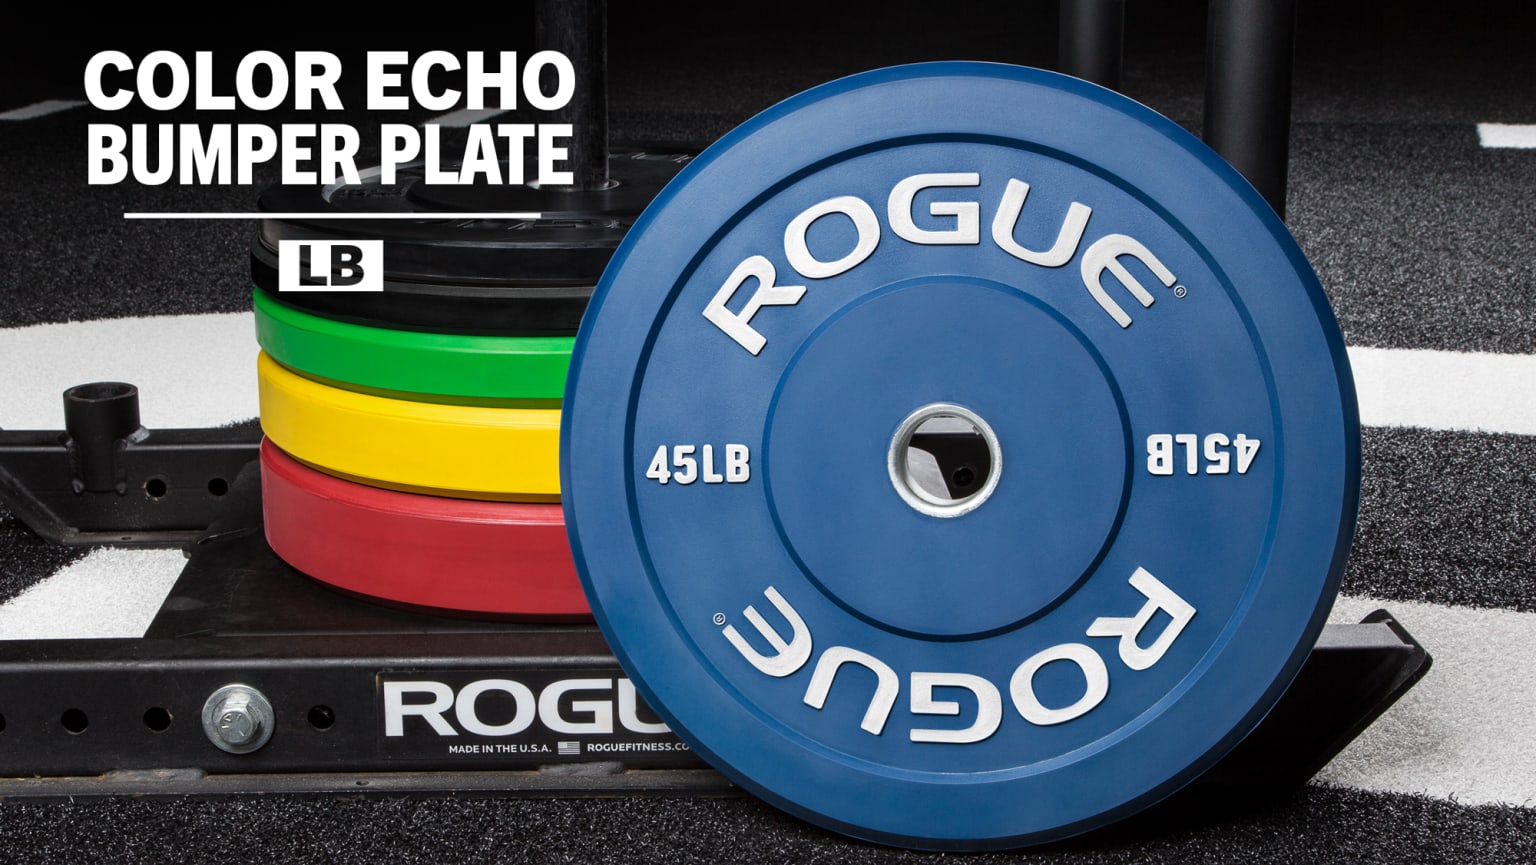 Rogue Color Echo Bumper Plates | Rogue USA